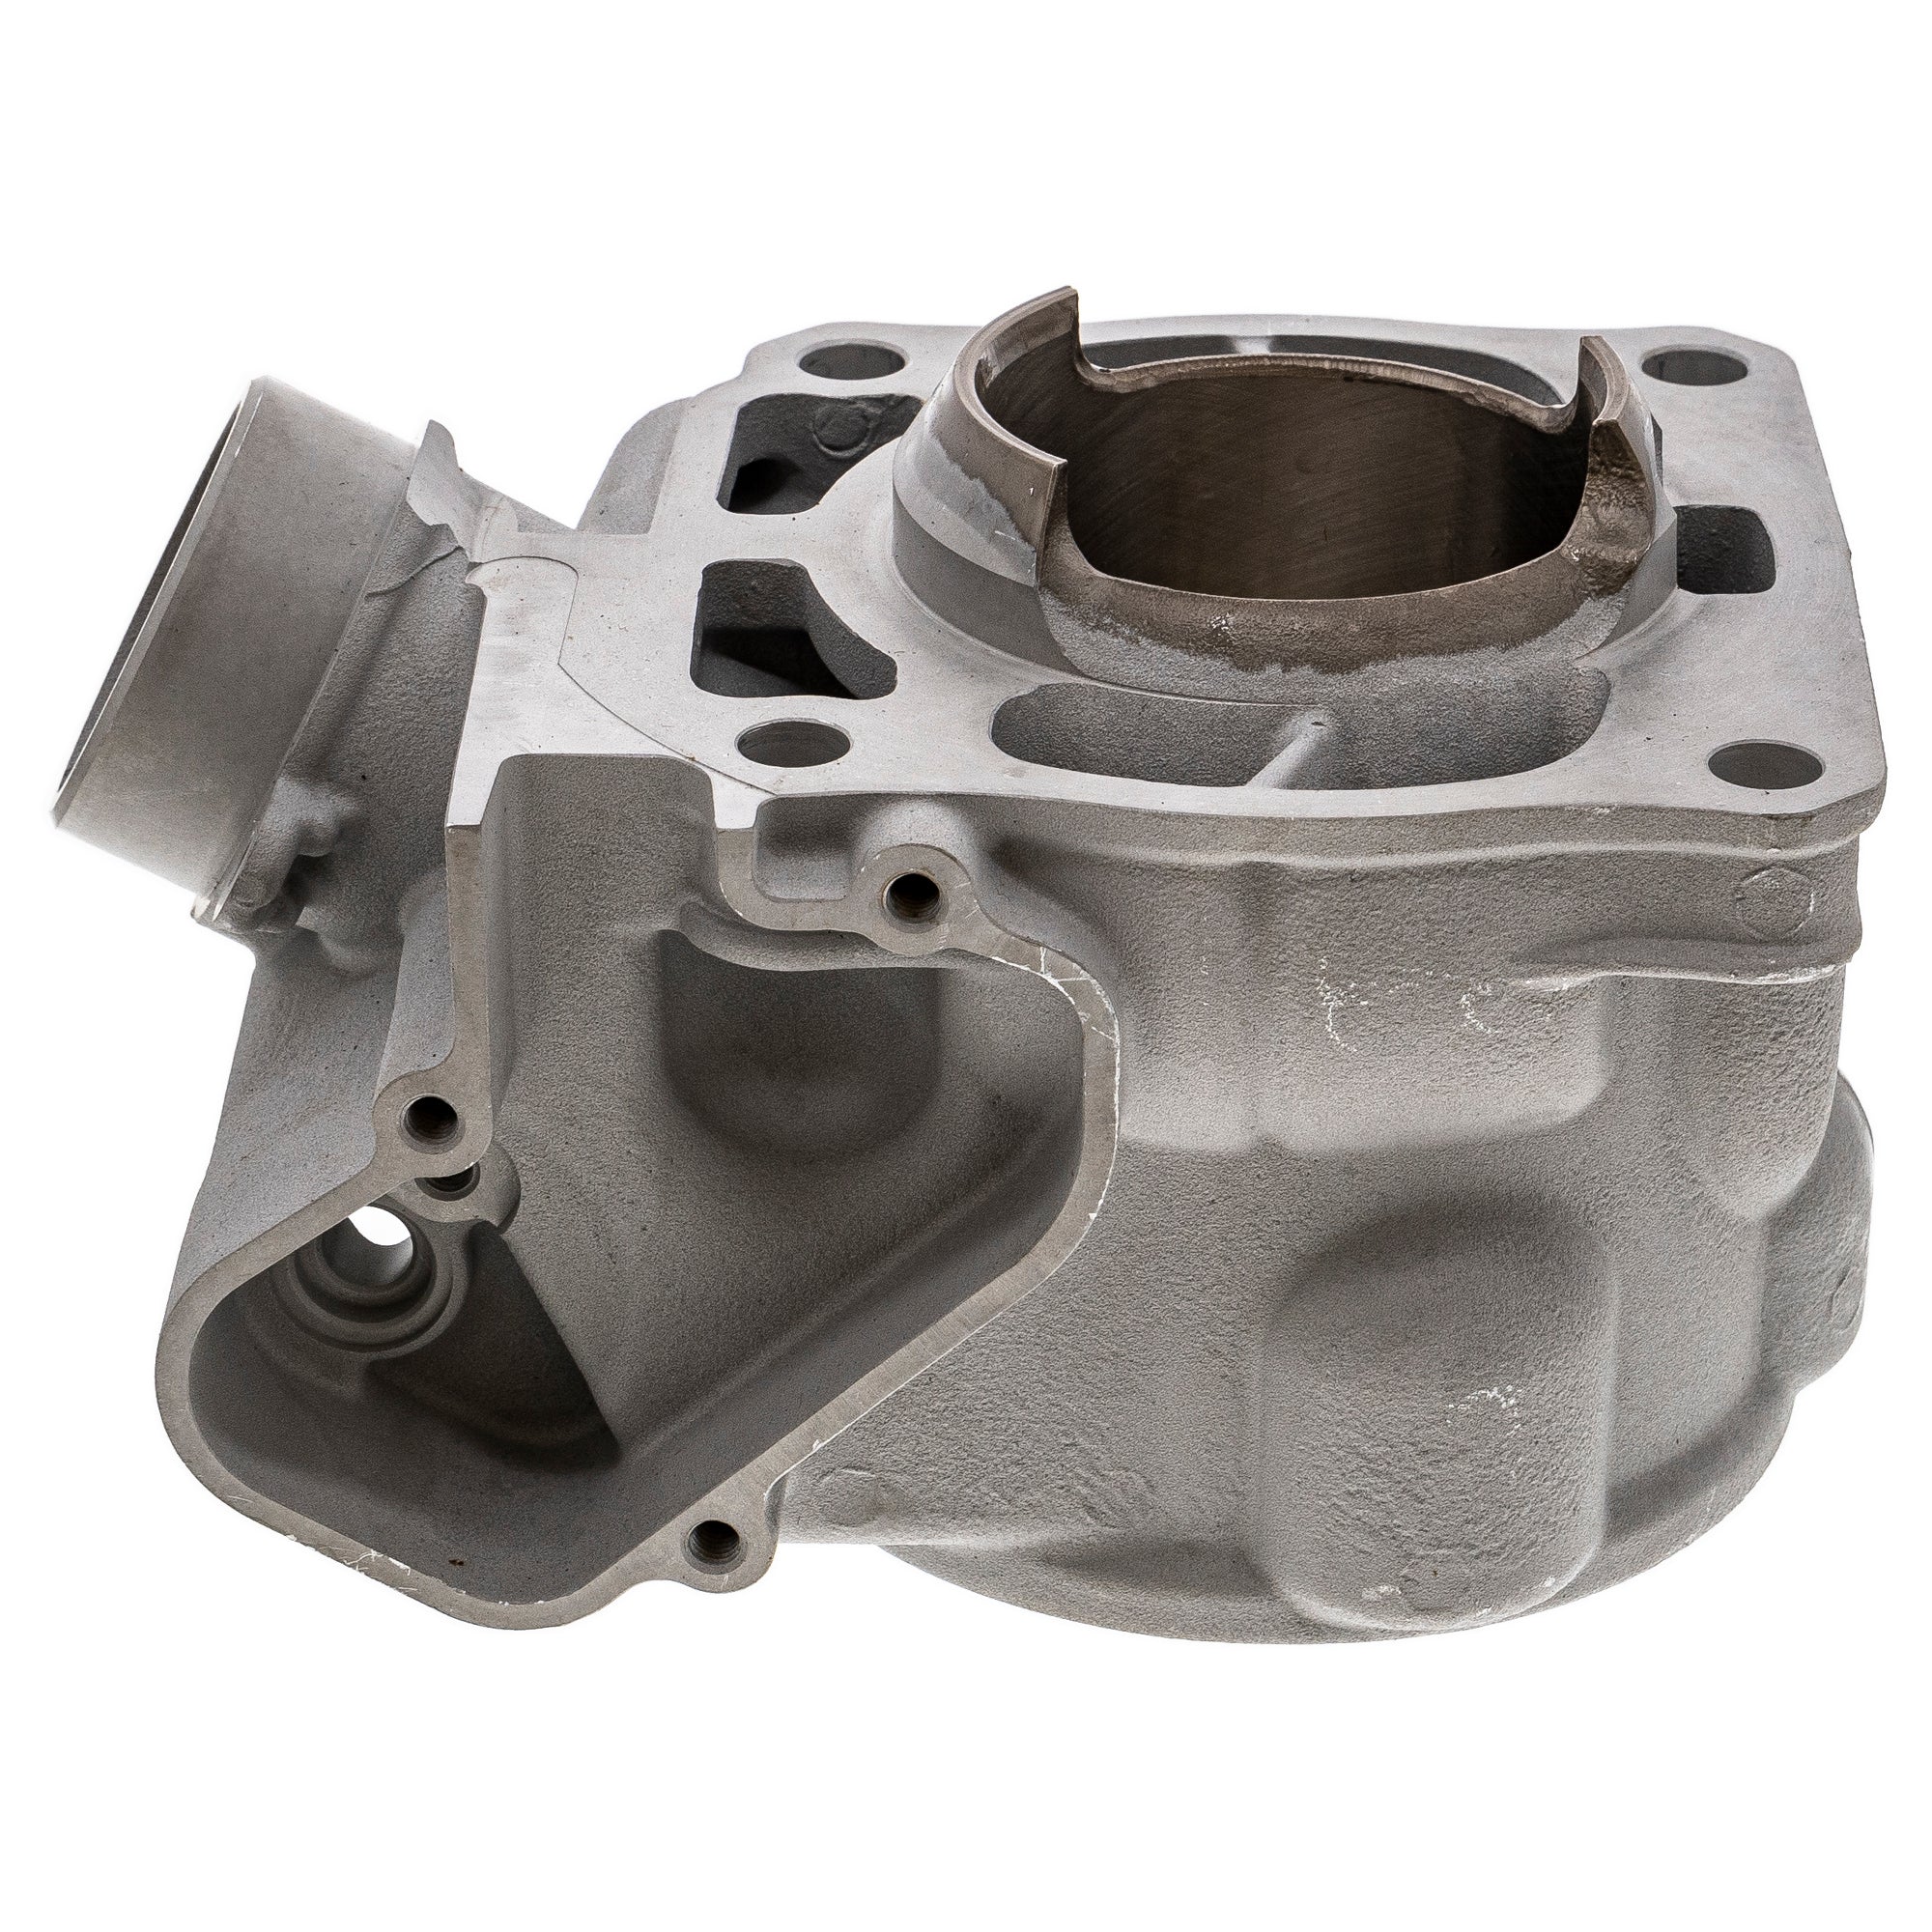 Engine Cylinder For Yamaha 1C3-11311-21-00 1C3-11311-20-00 1C3-11311-10-00 1C3-11311-01-00